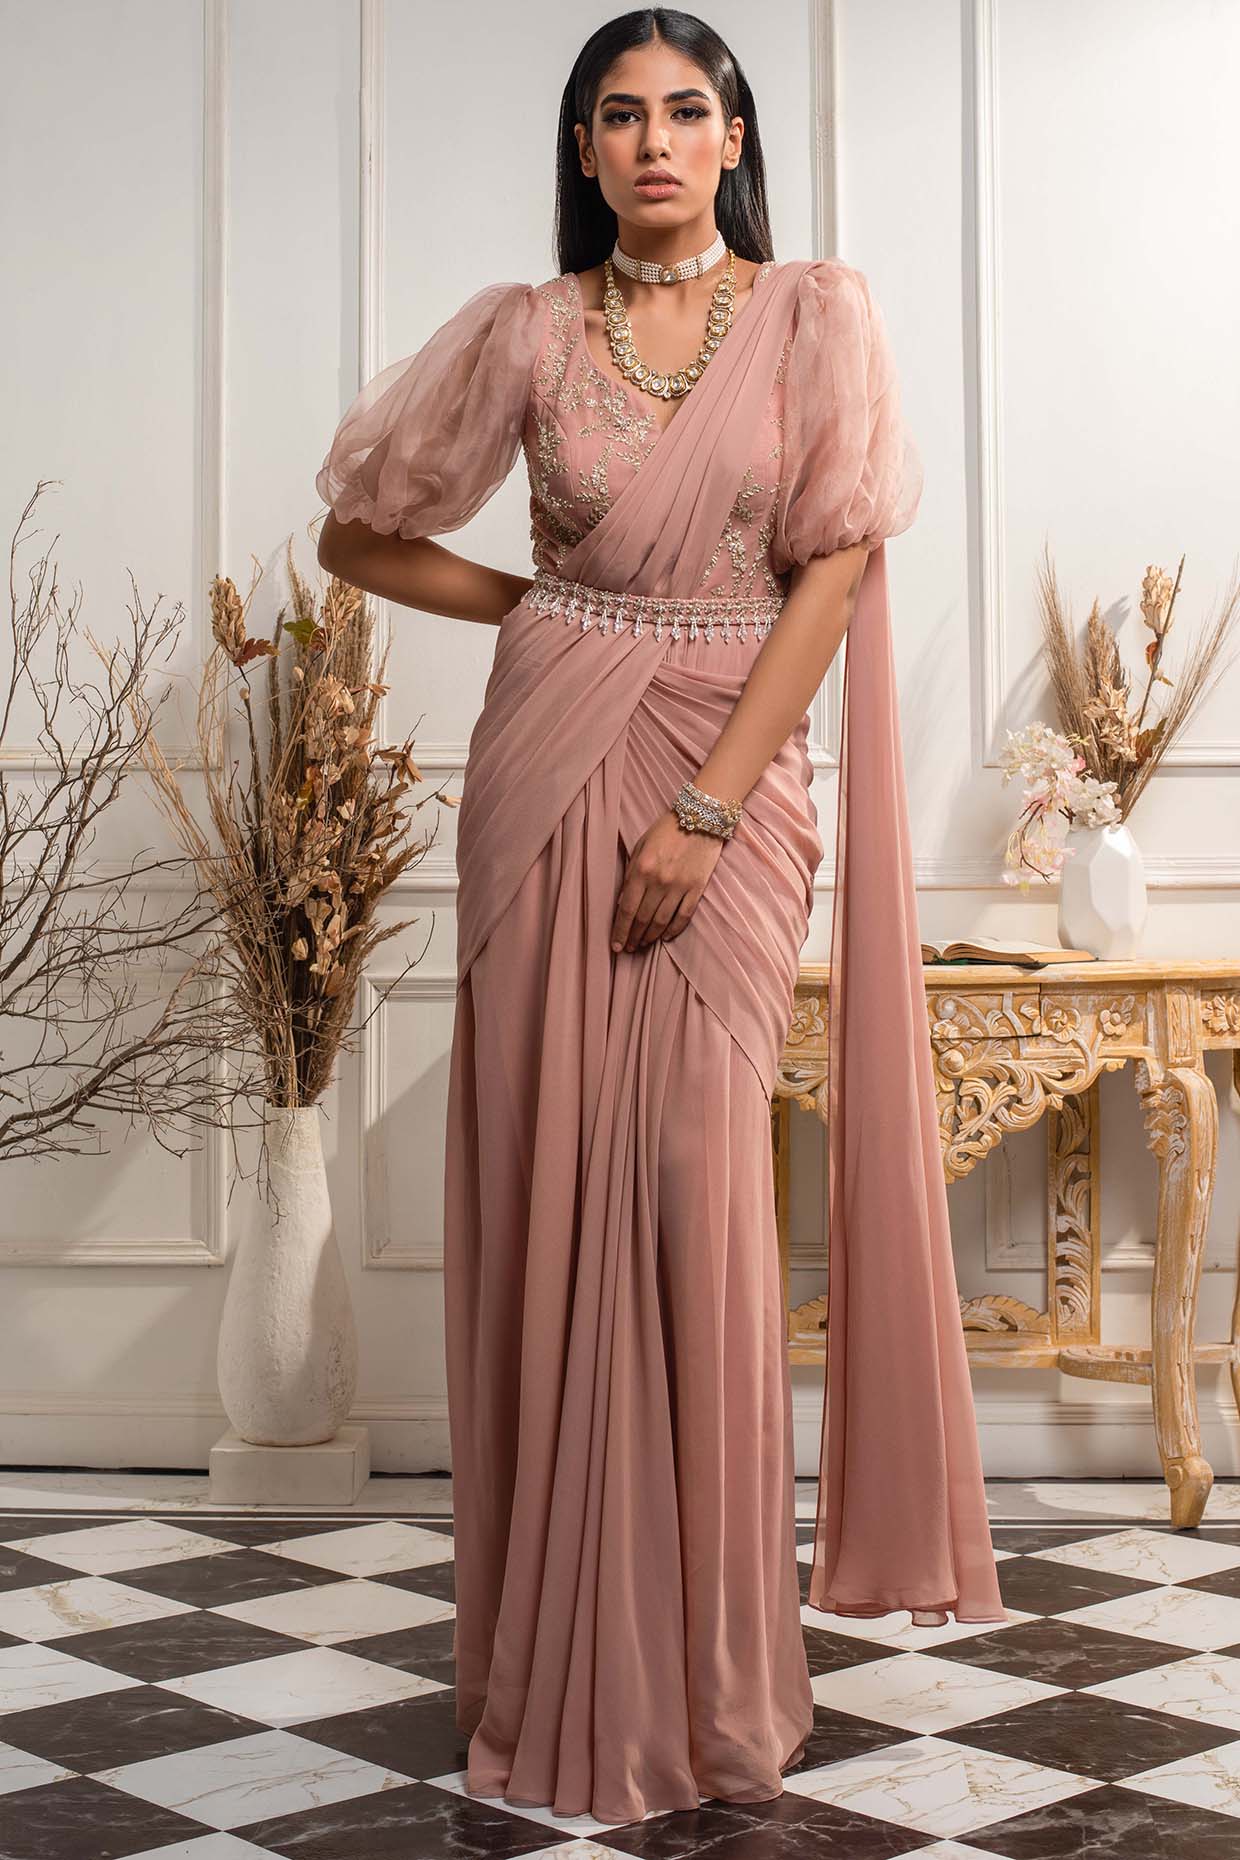 Get A Trendy Makeover With Saree Gowns ⋆ CashKaro.com